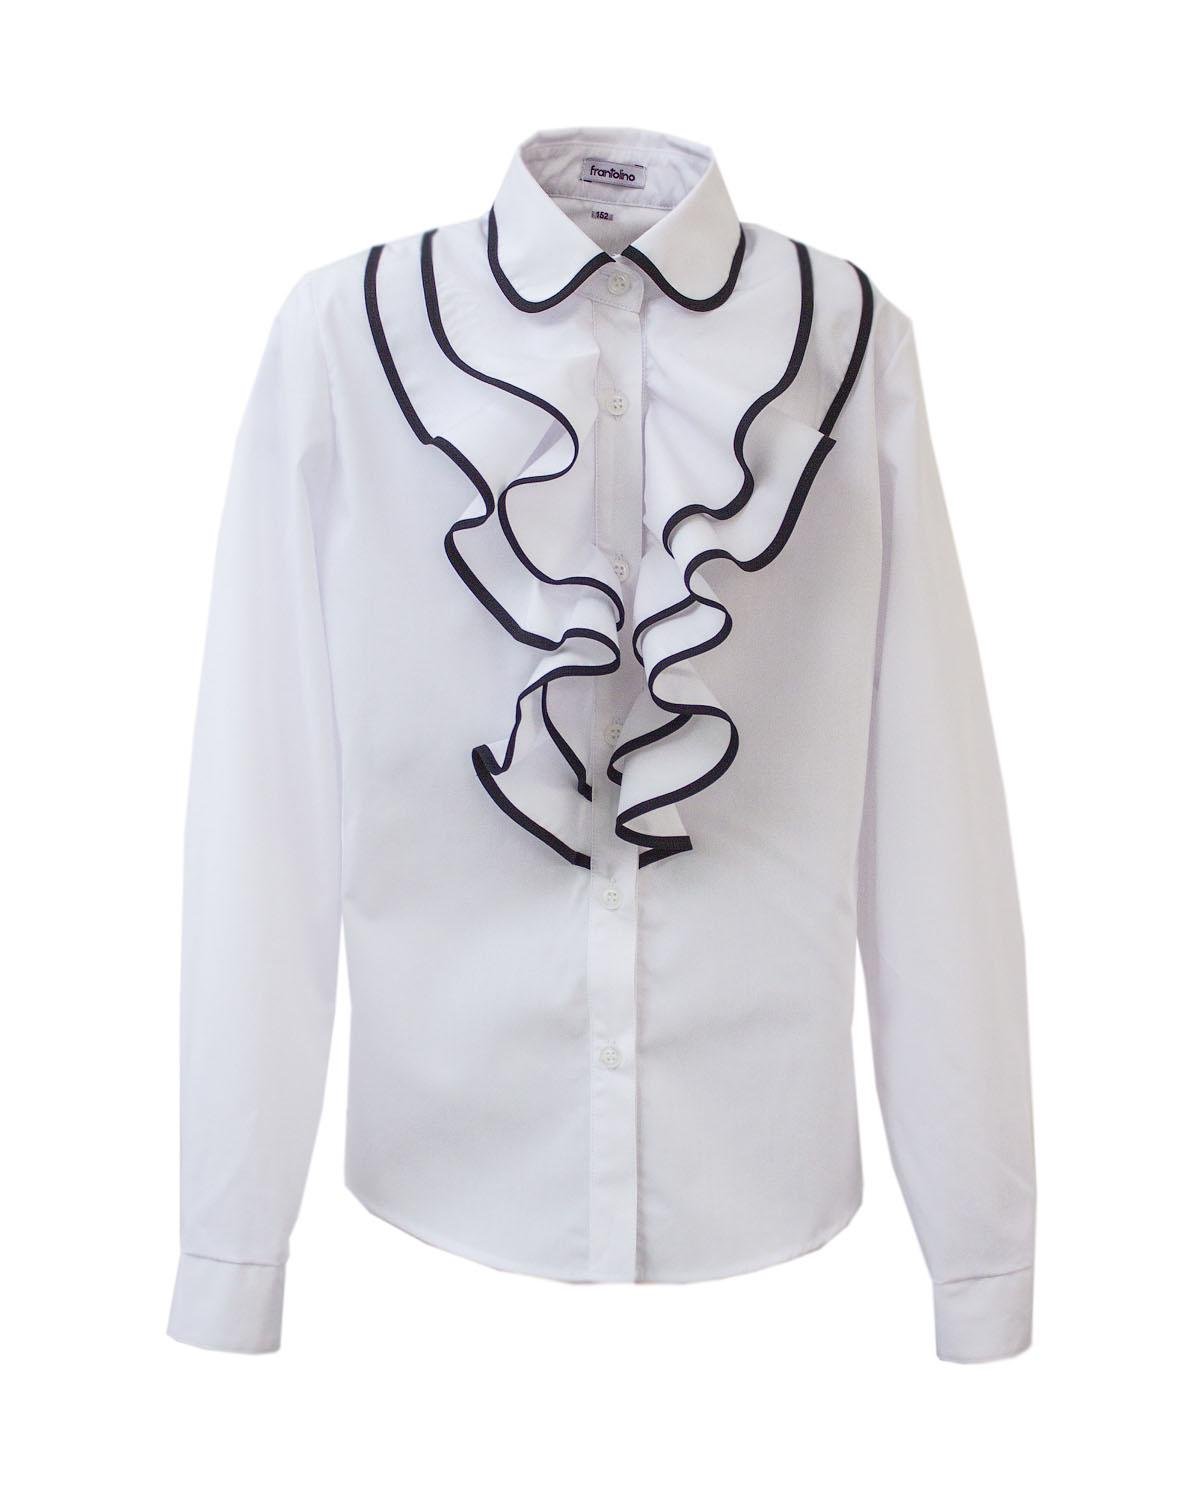 Блуза для девочки Frantolino 1205-001 с воланами 134 см Белый (6745)